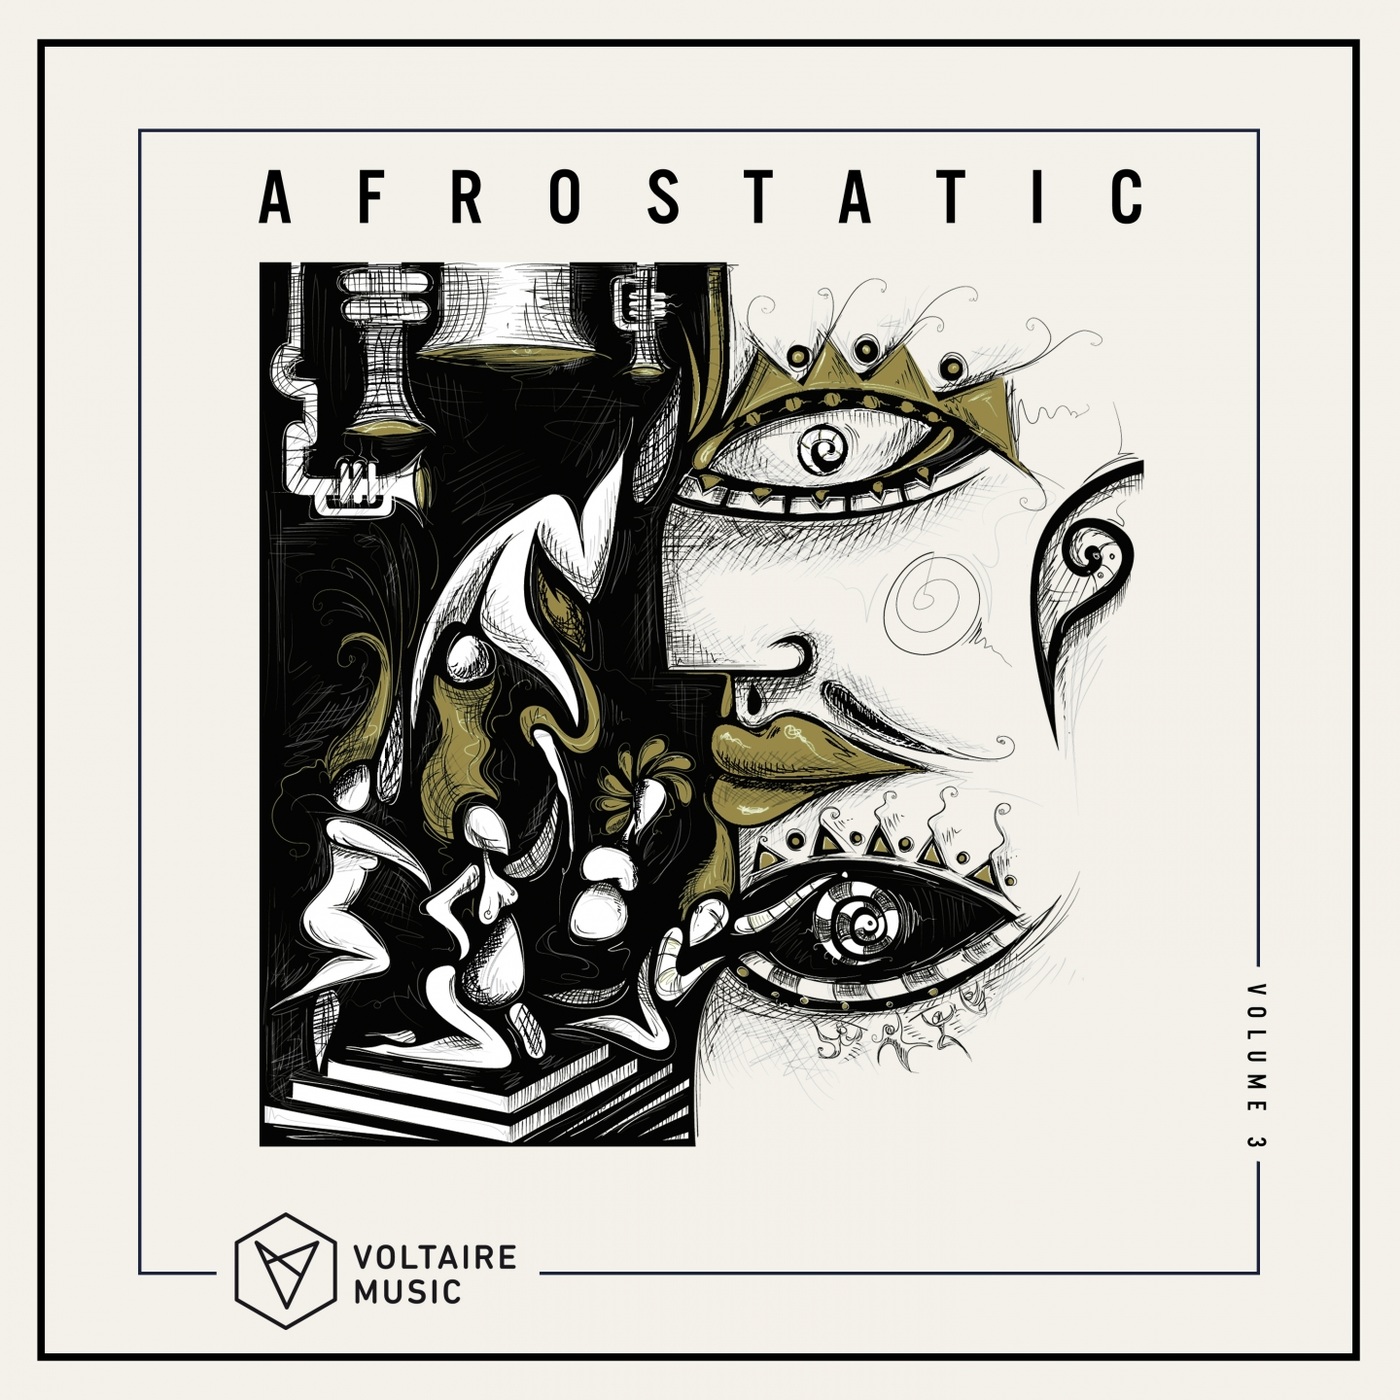 VA - Voltaire Music pres. Afrostatic, Vol. 3 / Voltaire Music